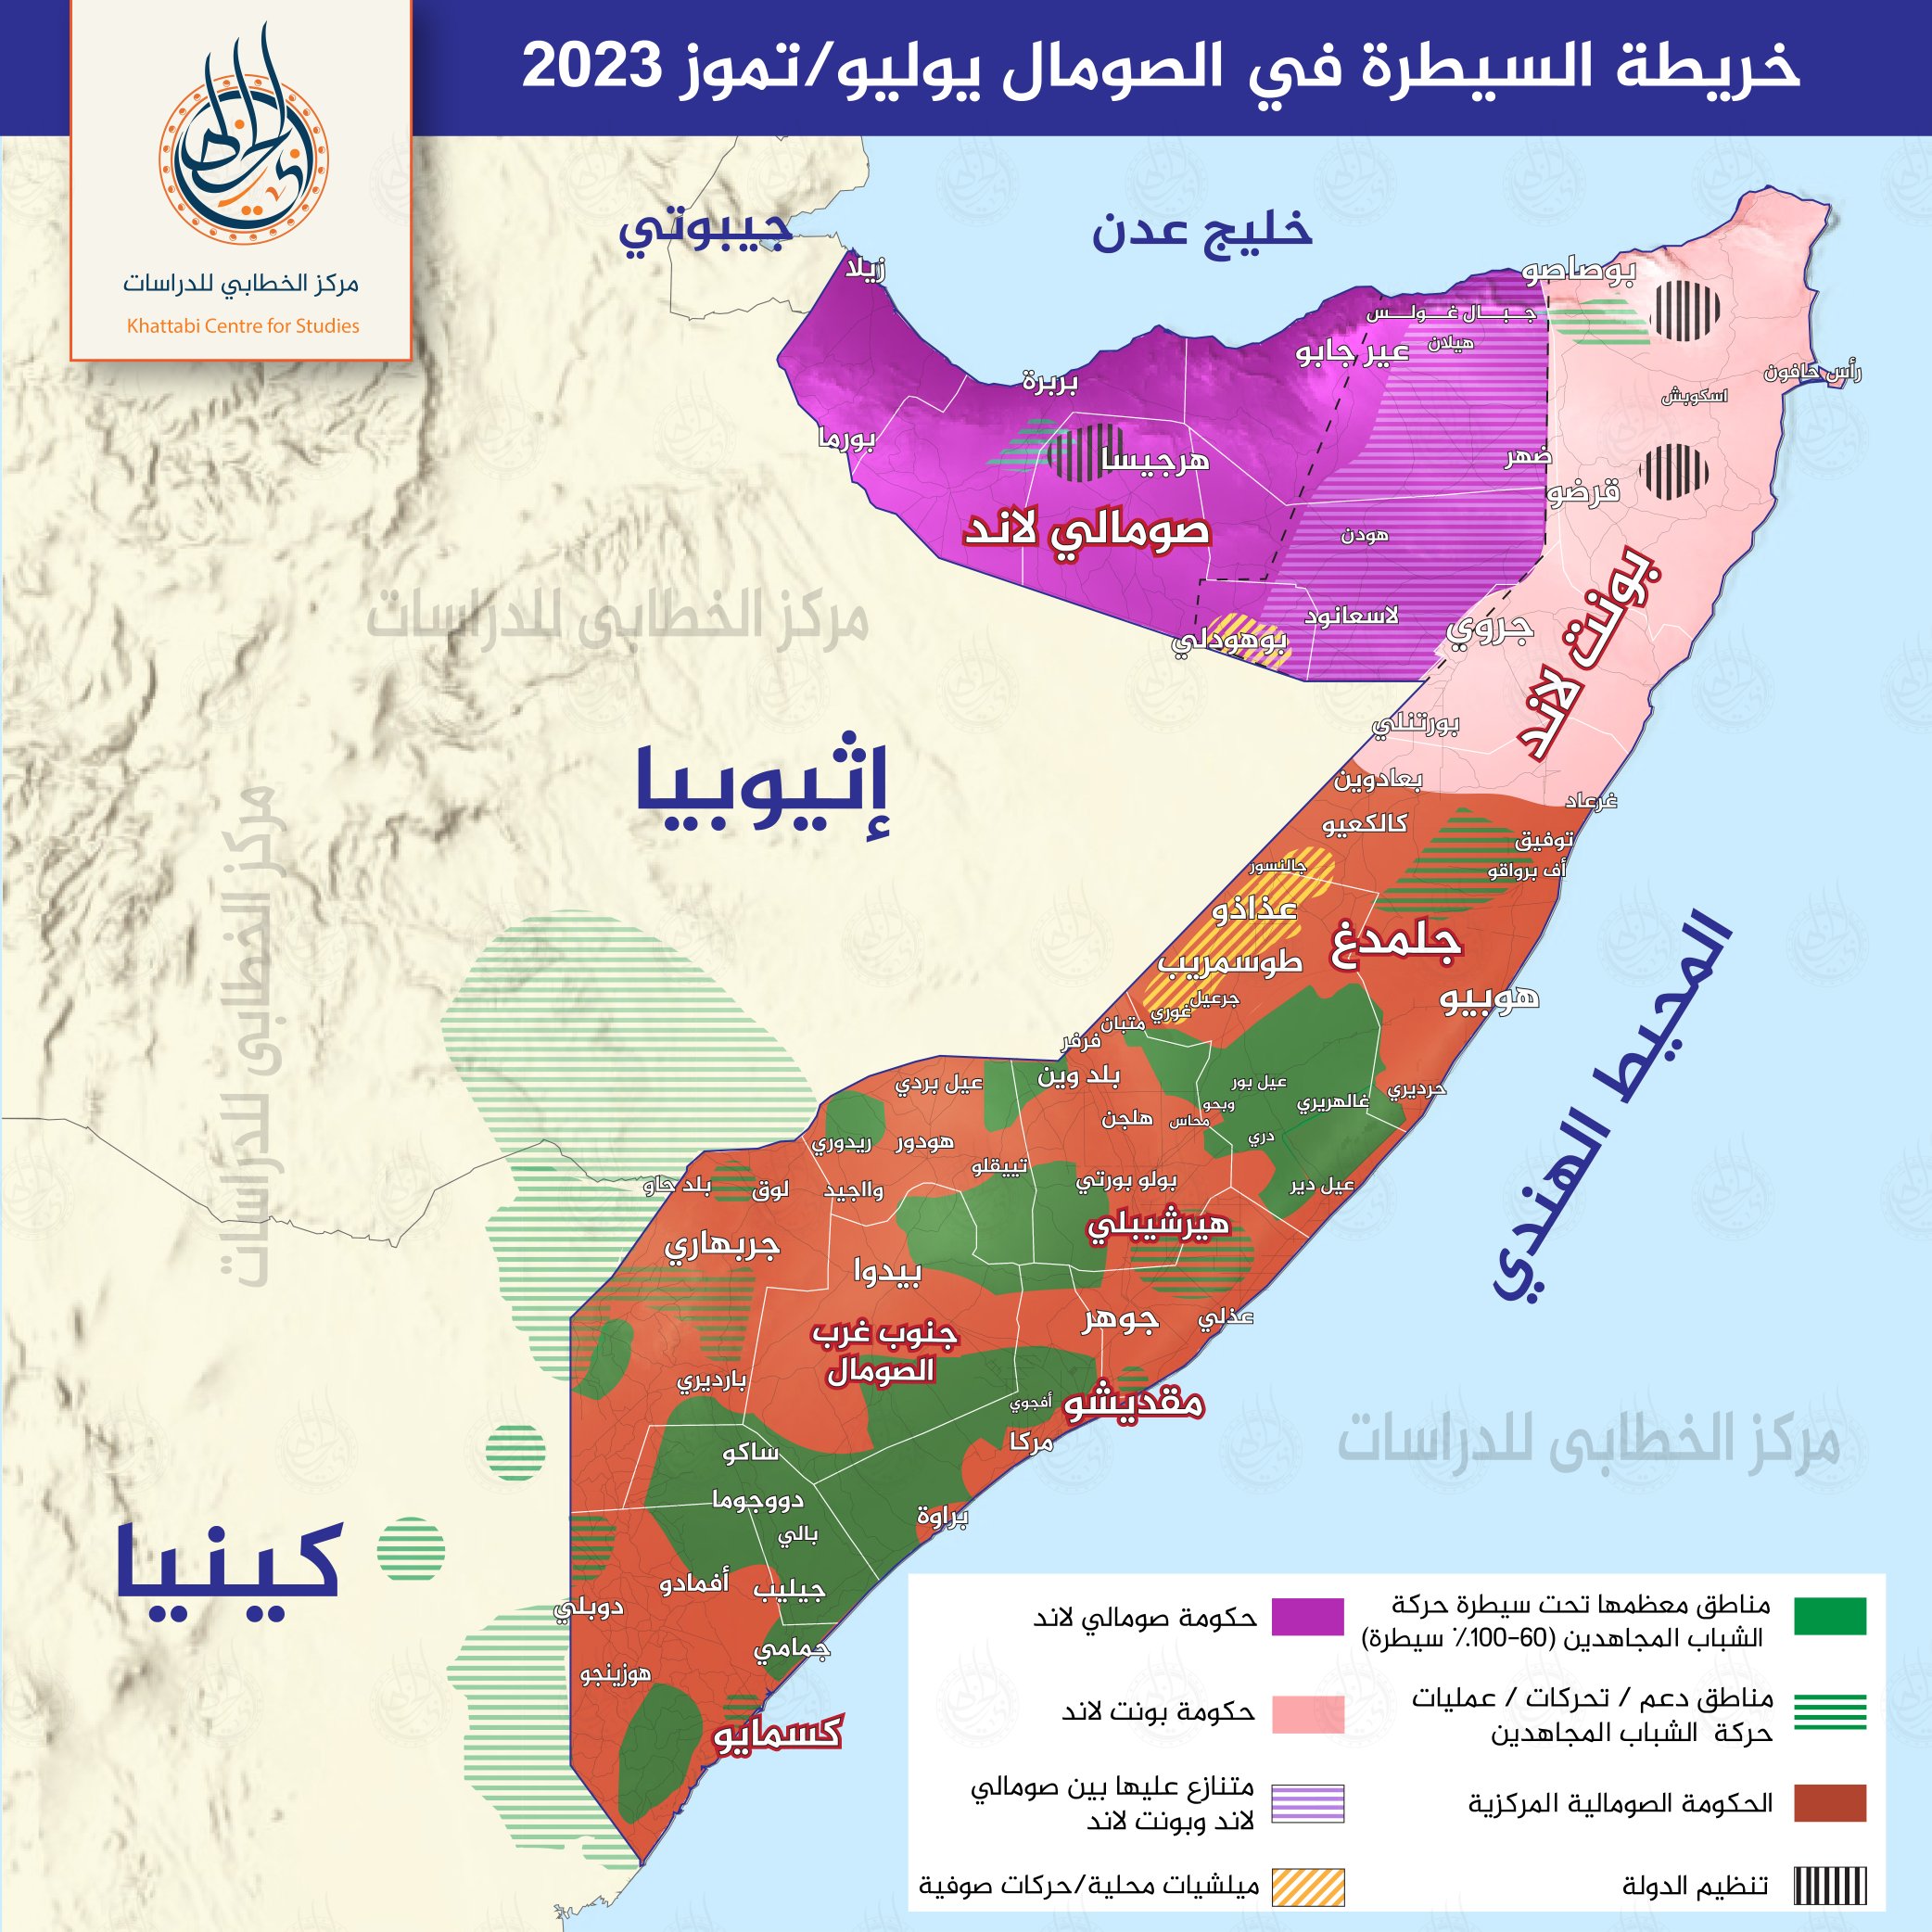 الخطابي للدراسات on X: "▪️#الصومال #خريطة #خريطة_الصومال خريطة السيطرة في  الصومال #حركة_الشباب_المجاهدين #الحكومة_الصومالية #مقديشو ▪️مركز الخطابي  للدراسات: https://t.co/uUWyRgj2ED" / X